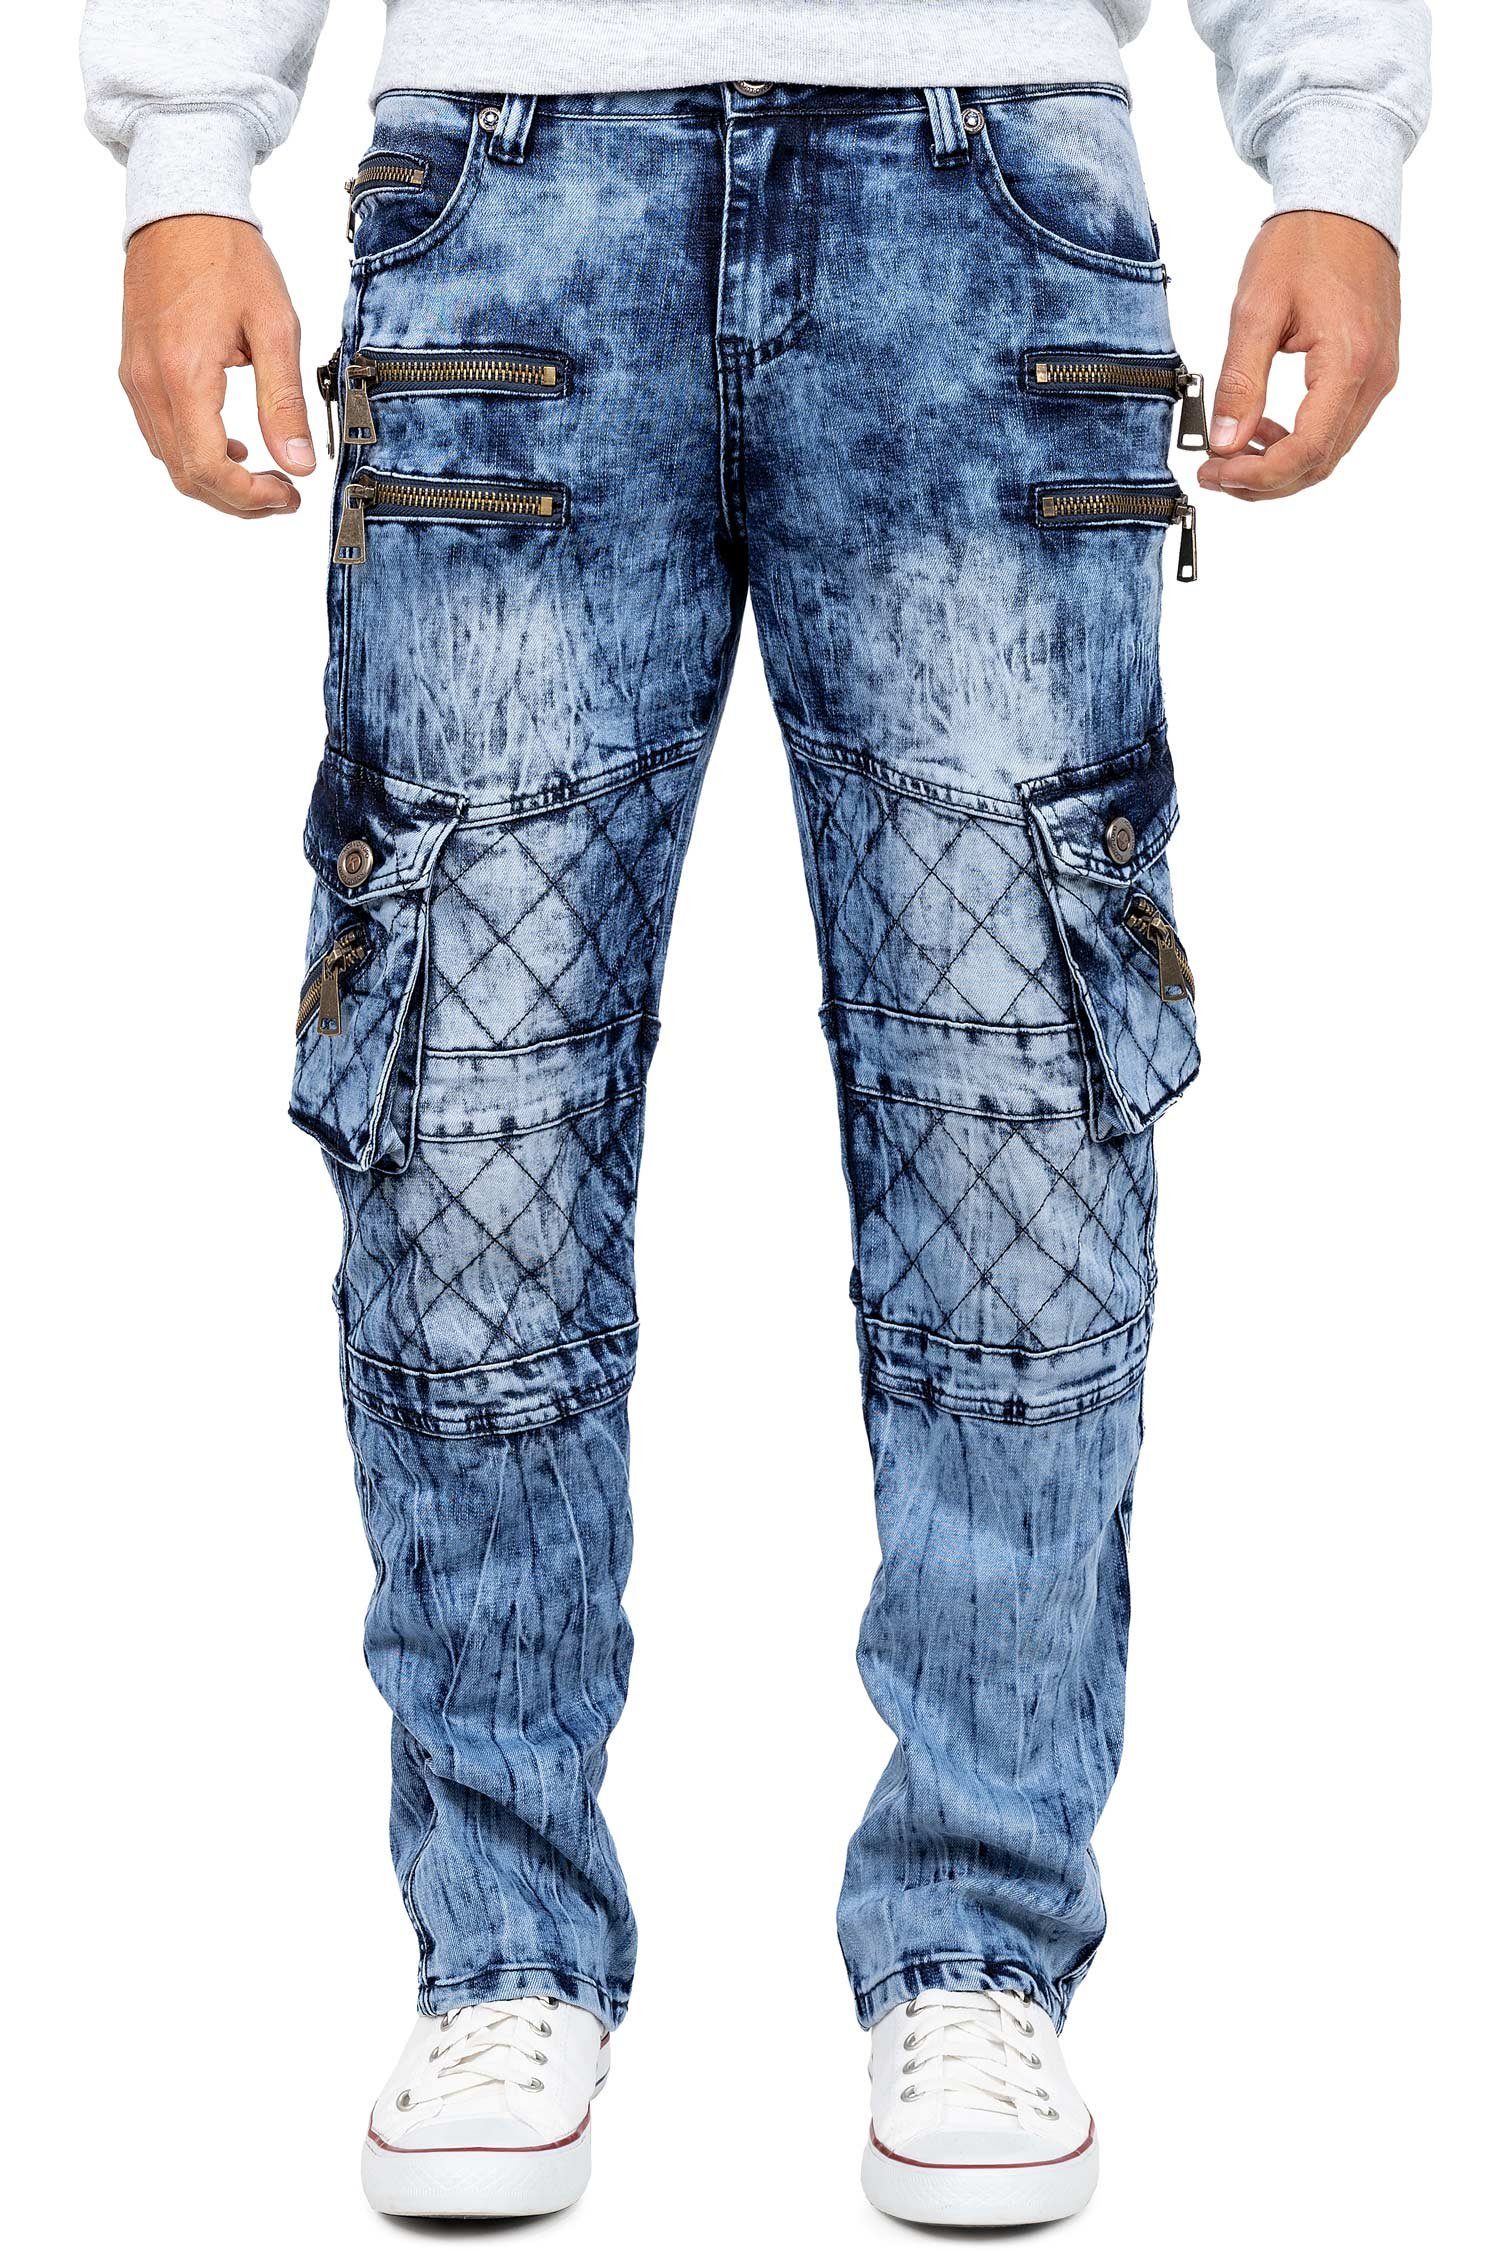 Kosmo Lupo 5-Pocket-Jeans Auffällige Herren Hose BA-KM060 Blau W30/L32 (1-tlg) mit Verzierungen und Nieten